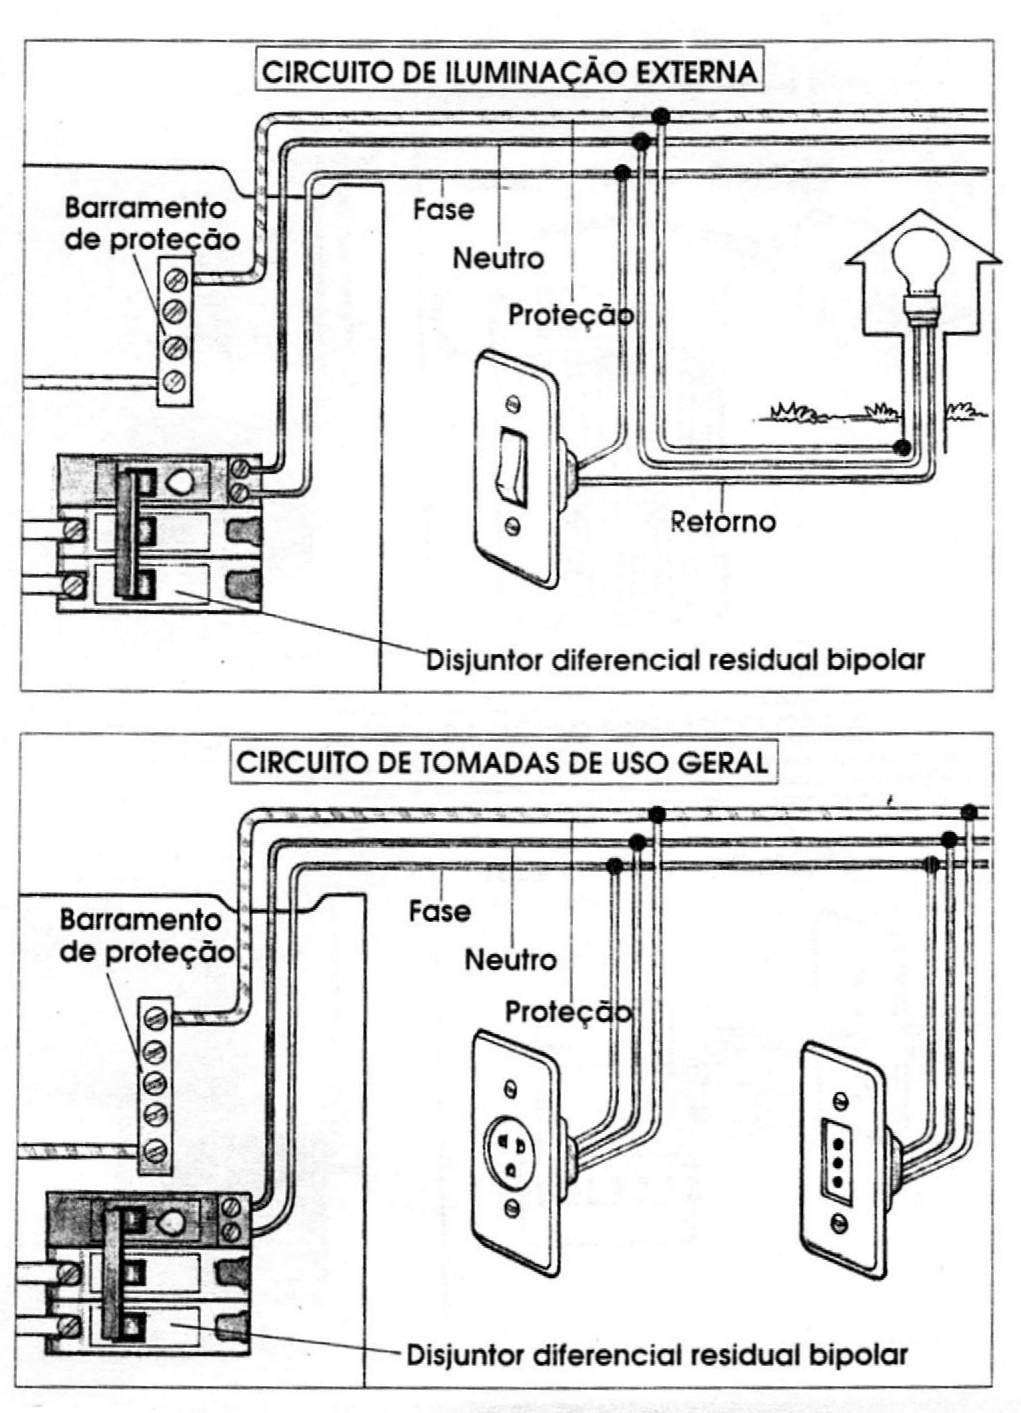 Exemplos de circuitos terminais protegidos por disjuntores DR.